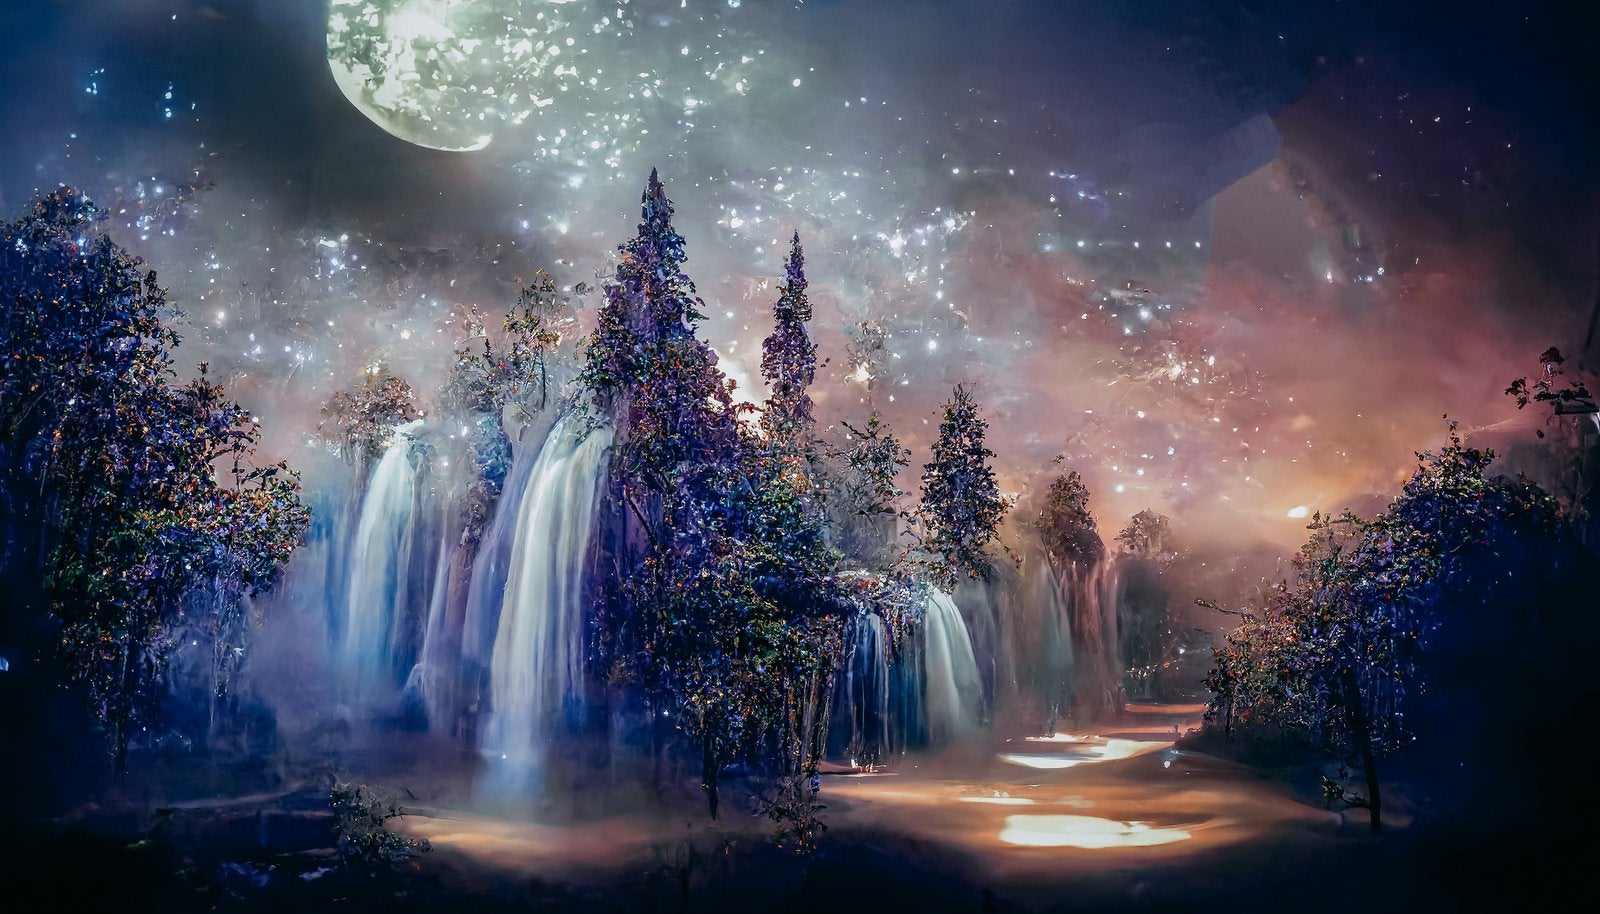 「木々の間から流れる滝と舞い上がる光」の写真